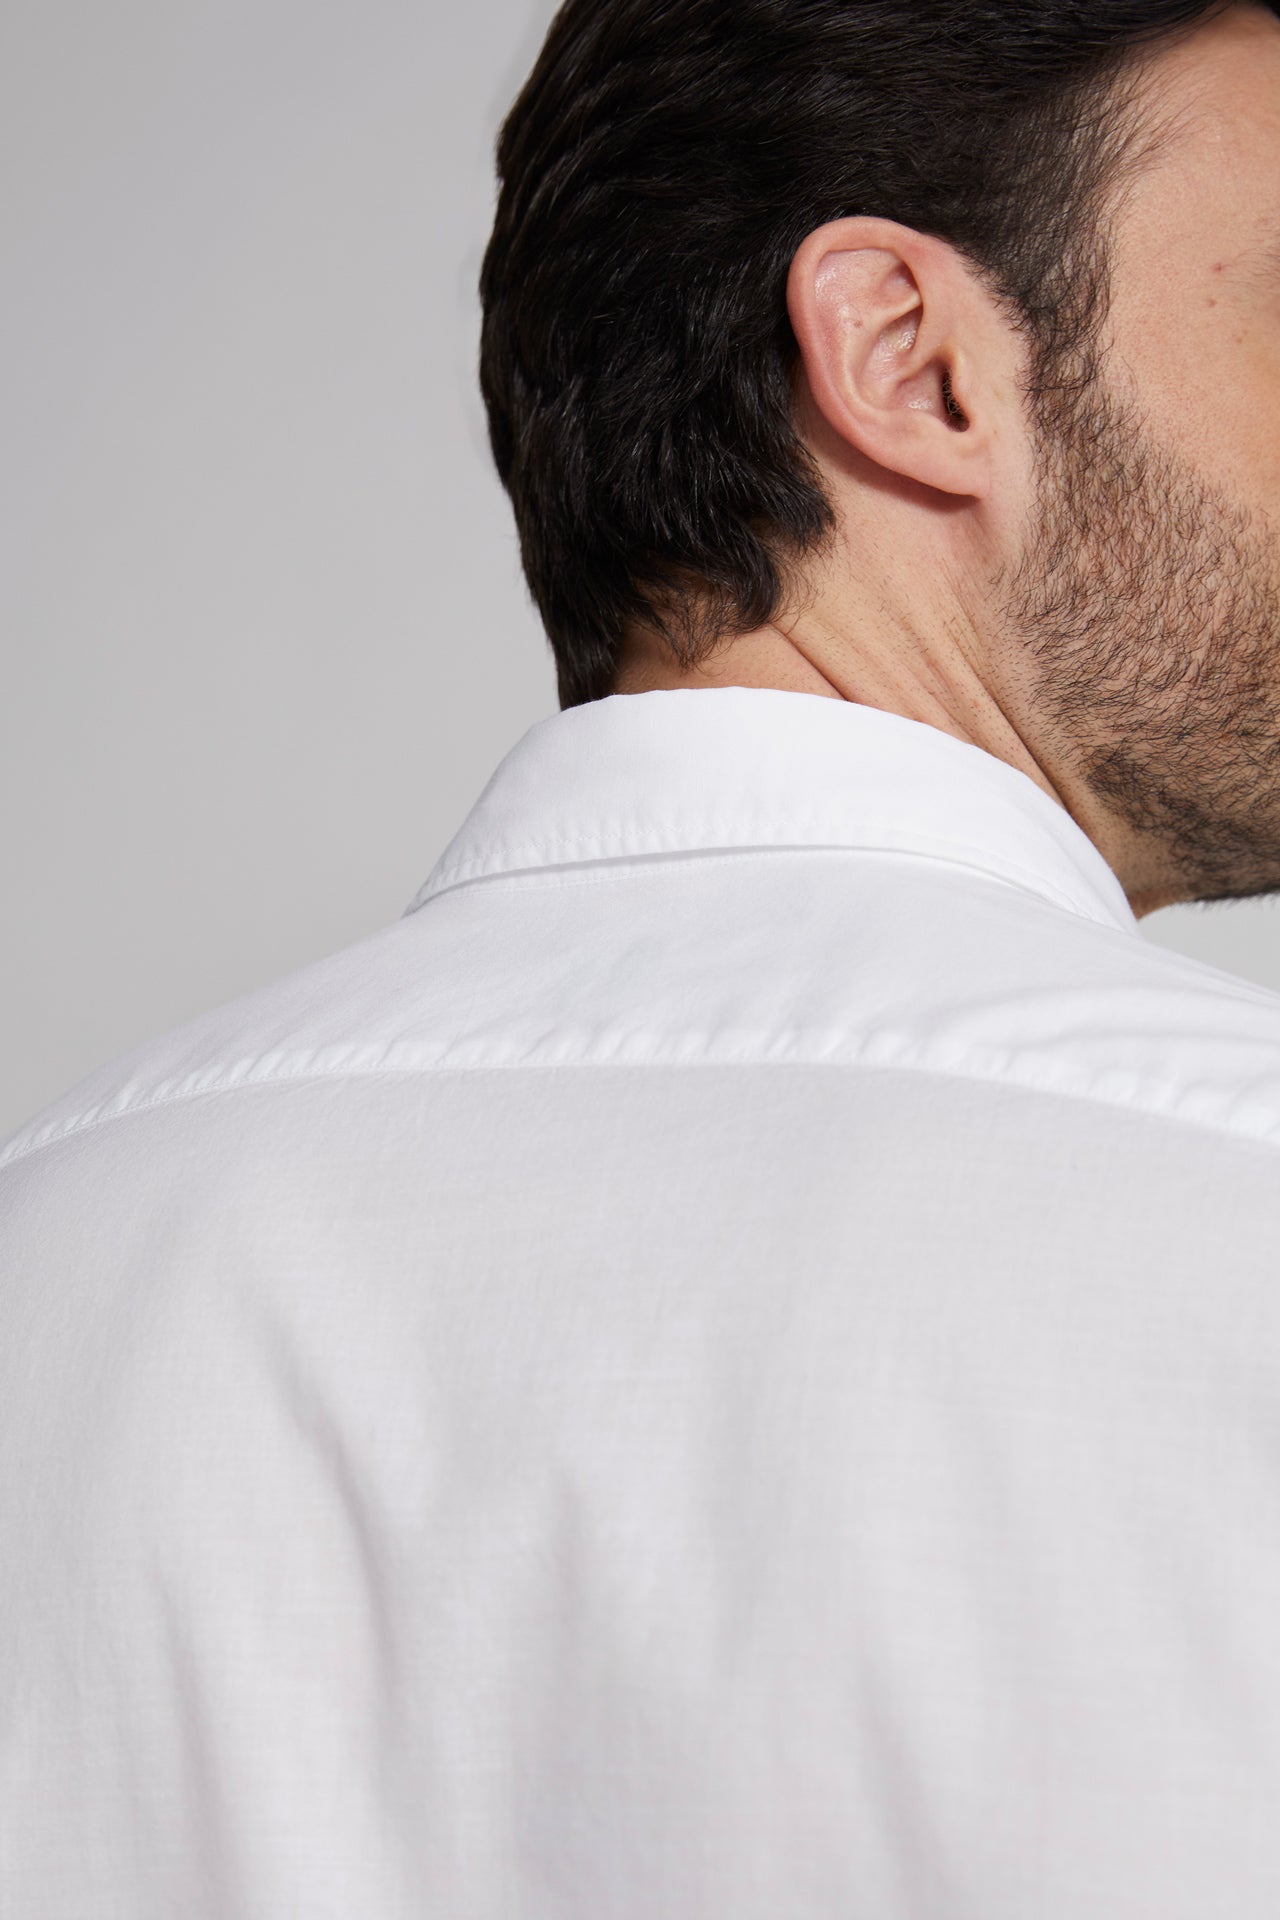 men's white designer voile shirt - detail of collar 